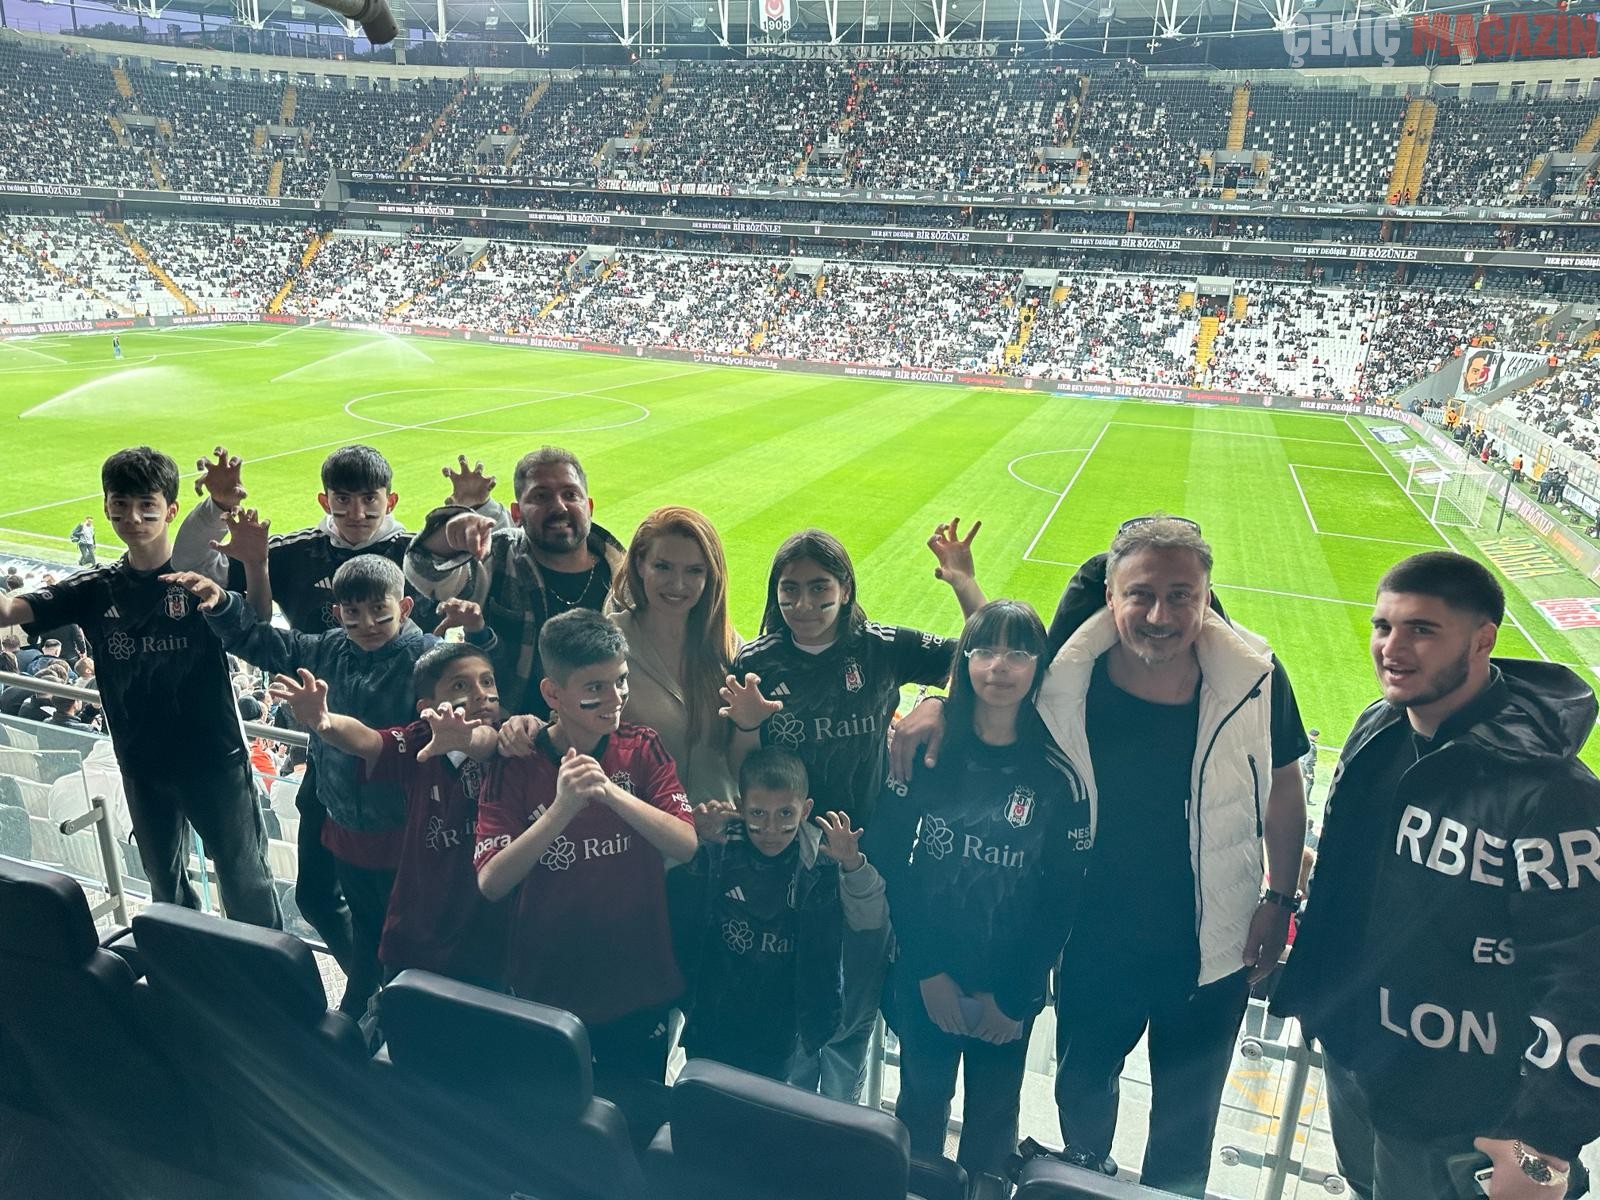 Pınar Eliçe Kimsesiz Çocuklarla Beşiktaş Maçını İzledi